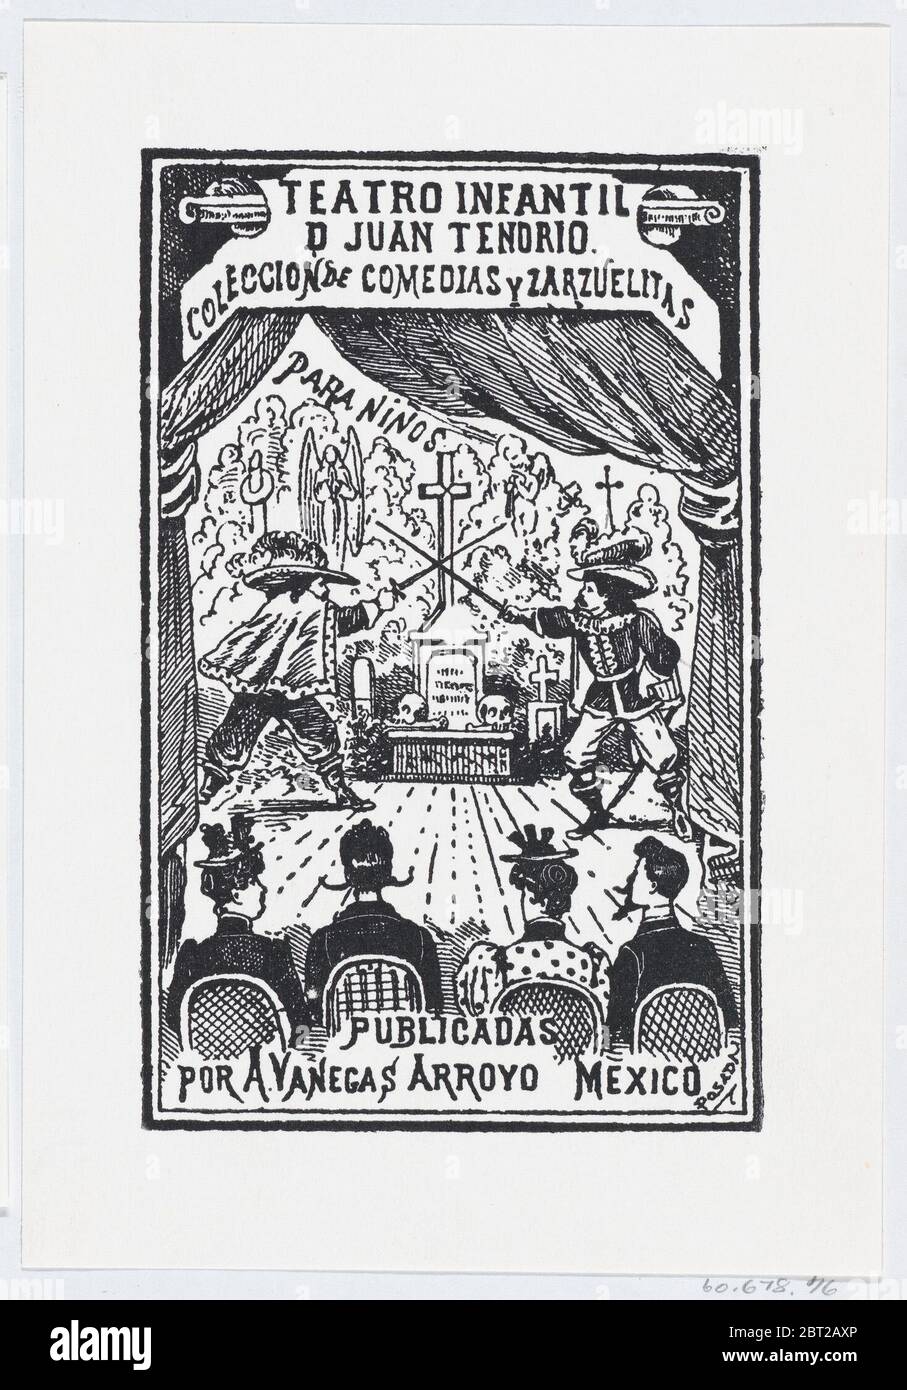 Deux hommes qui se sont présentés sur une scène devant un public, illustration du Teatro Infantil de Juan Tenorio, publié par Antonio Vanegas Arroyo, ca. 1880-1910. Banque D'Images